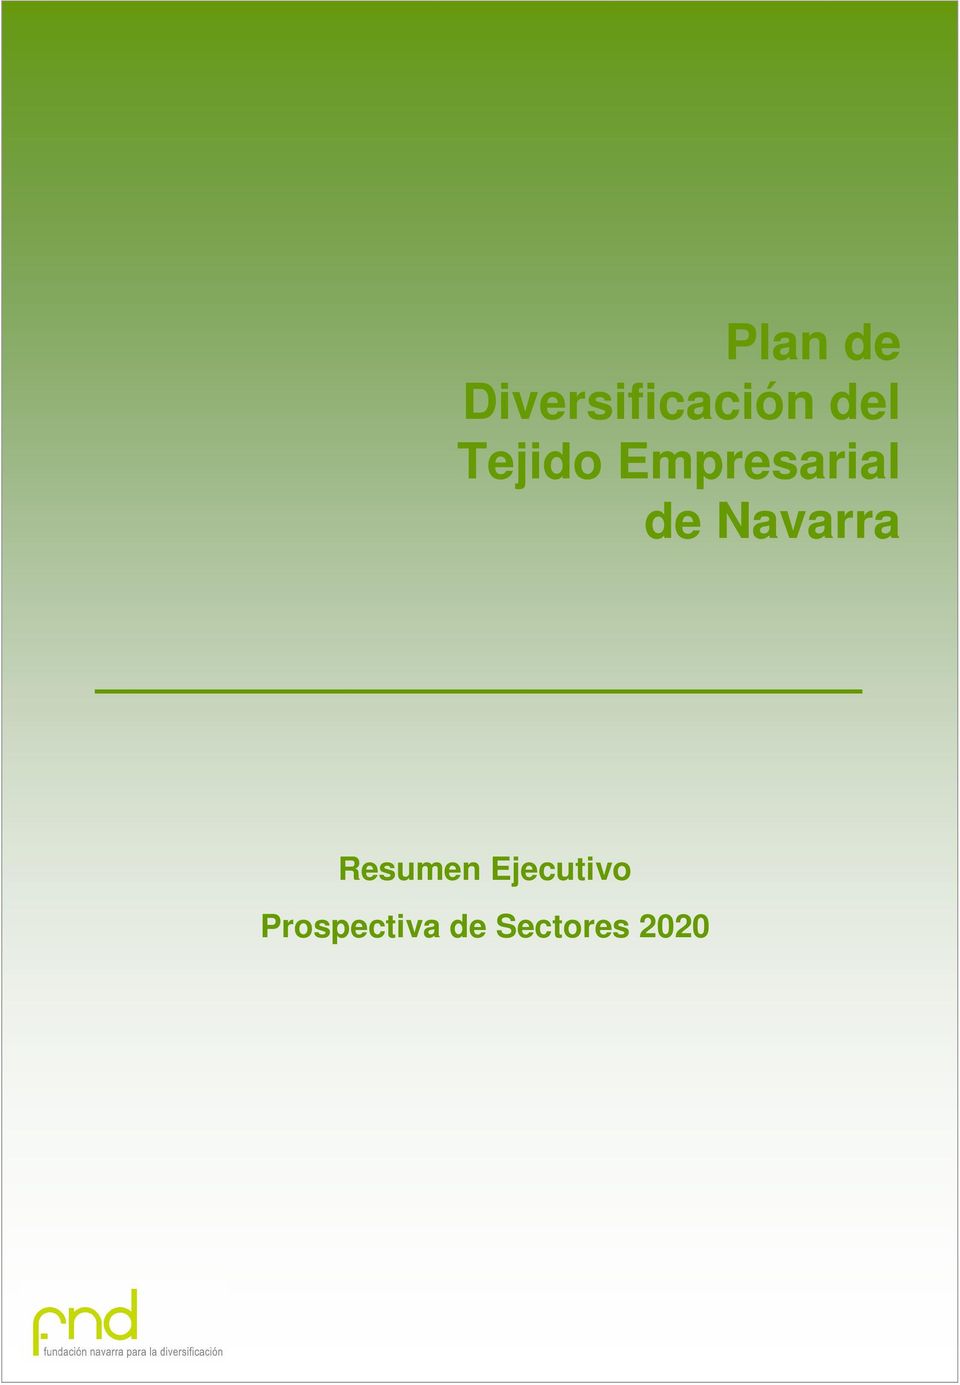 Navarra Resumen Ejecutivo